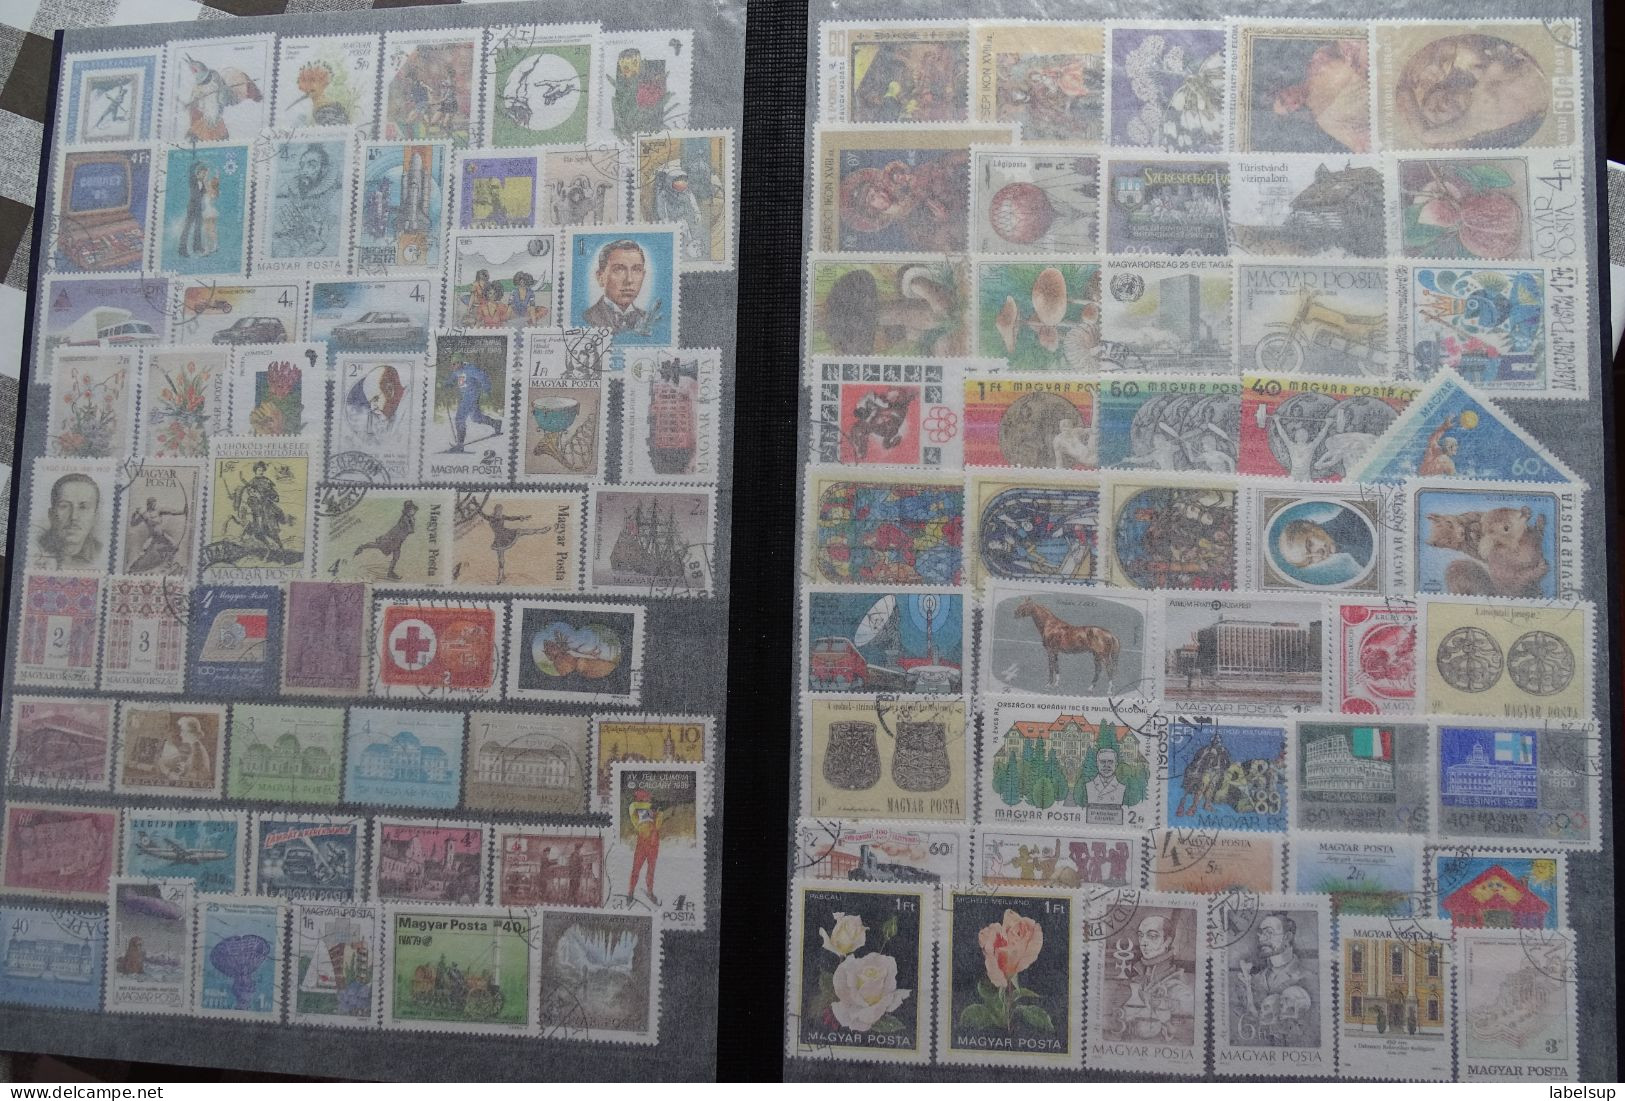 album de timbres de Hongrie, à voir les photos